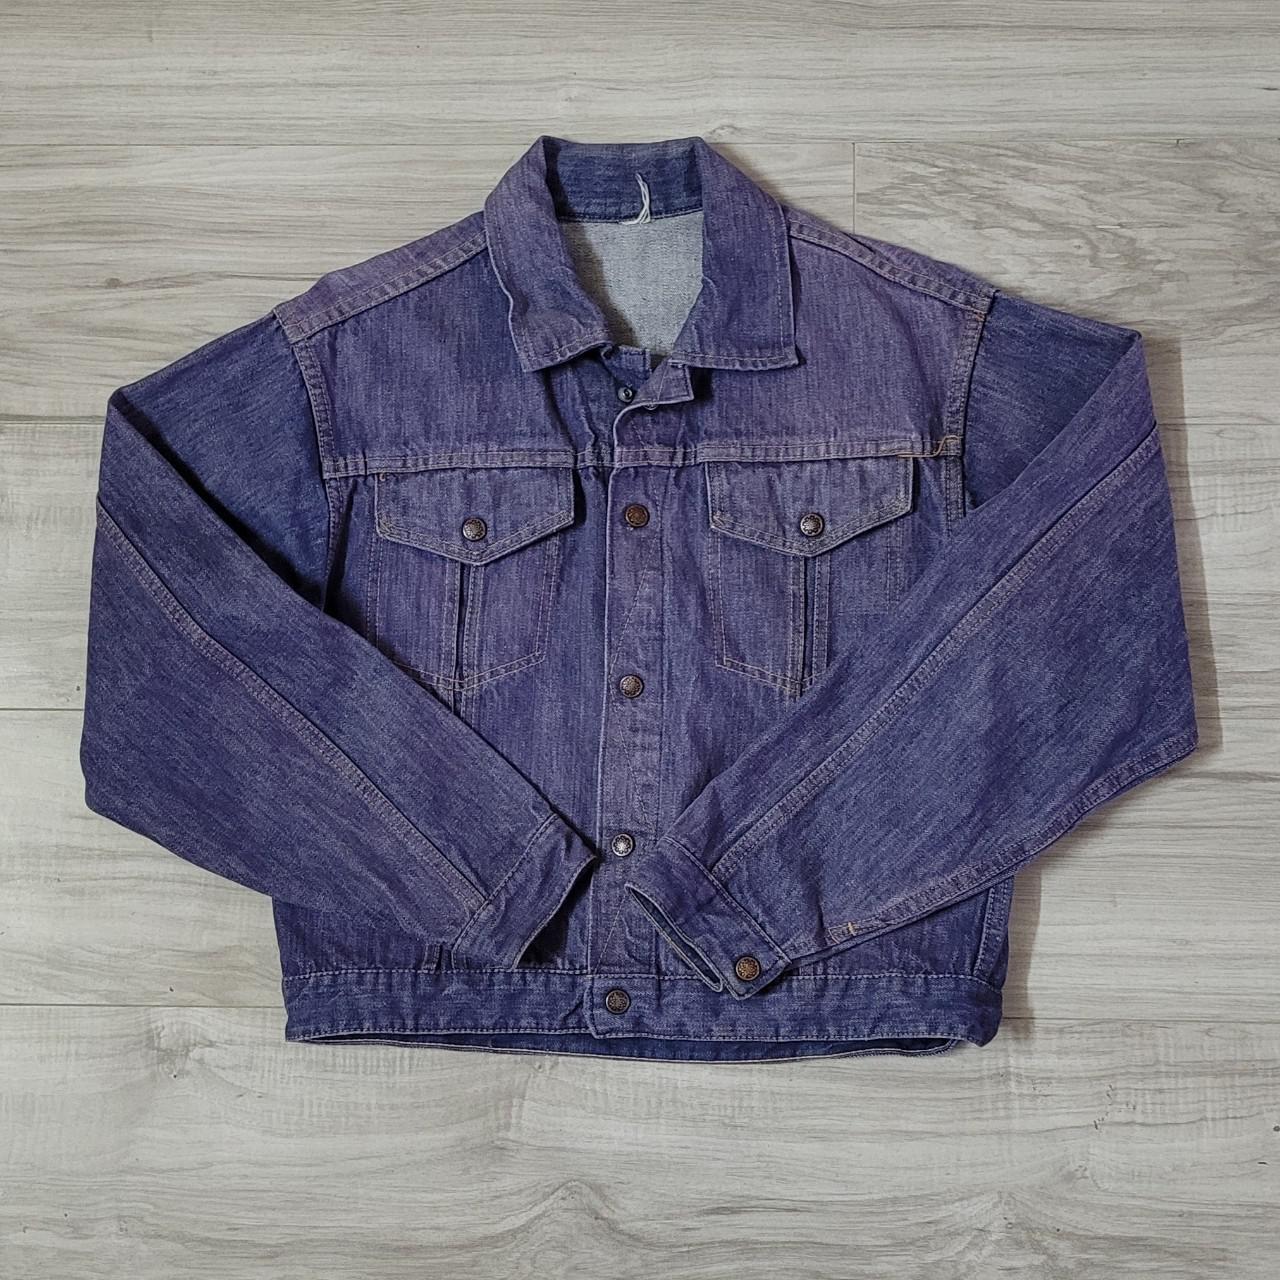 Faded purple denim jacket. Cropped fit. Not sized,... - Depop